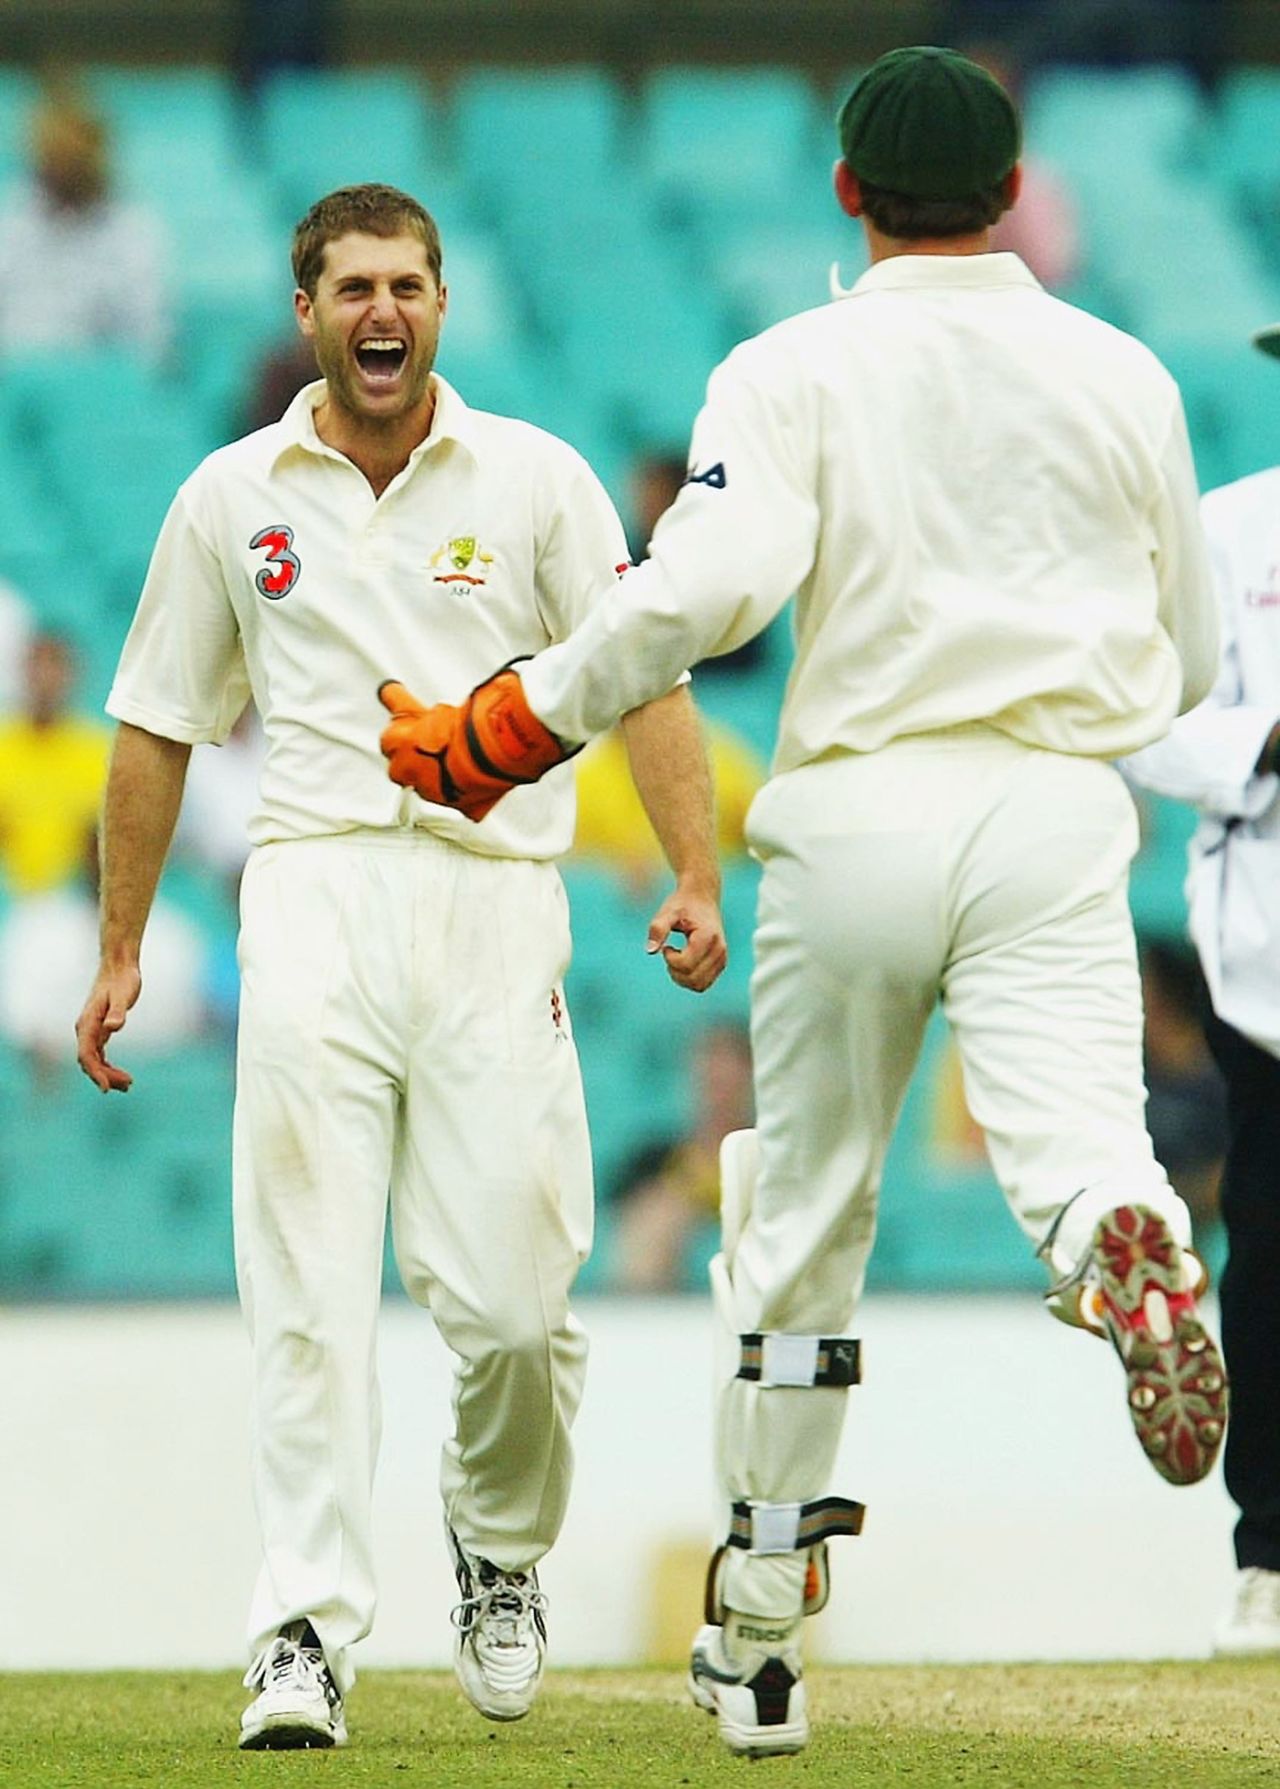 Simon Katich celebrates after taking the wicket of Stuart Carlisle, Australia v Zimbabwe, 2nd Test, Sydney, 3rd day, October 19, 2003